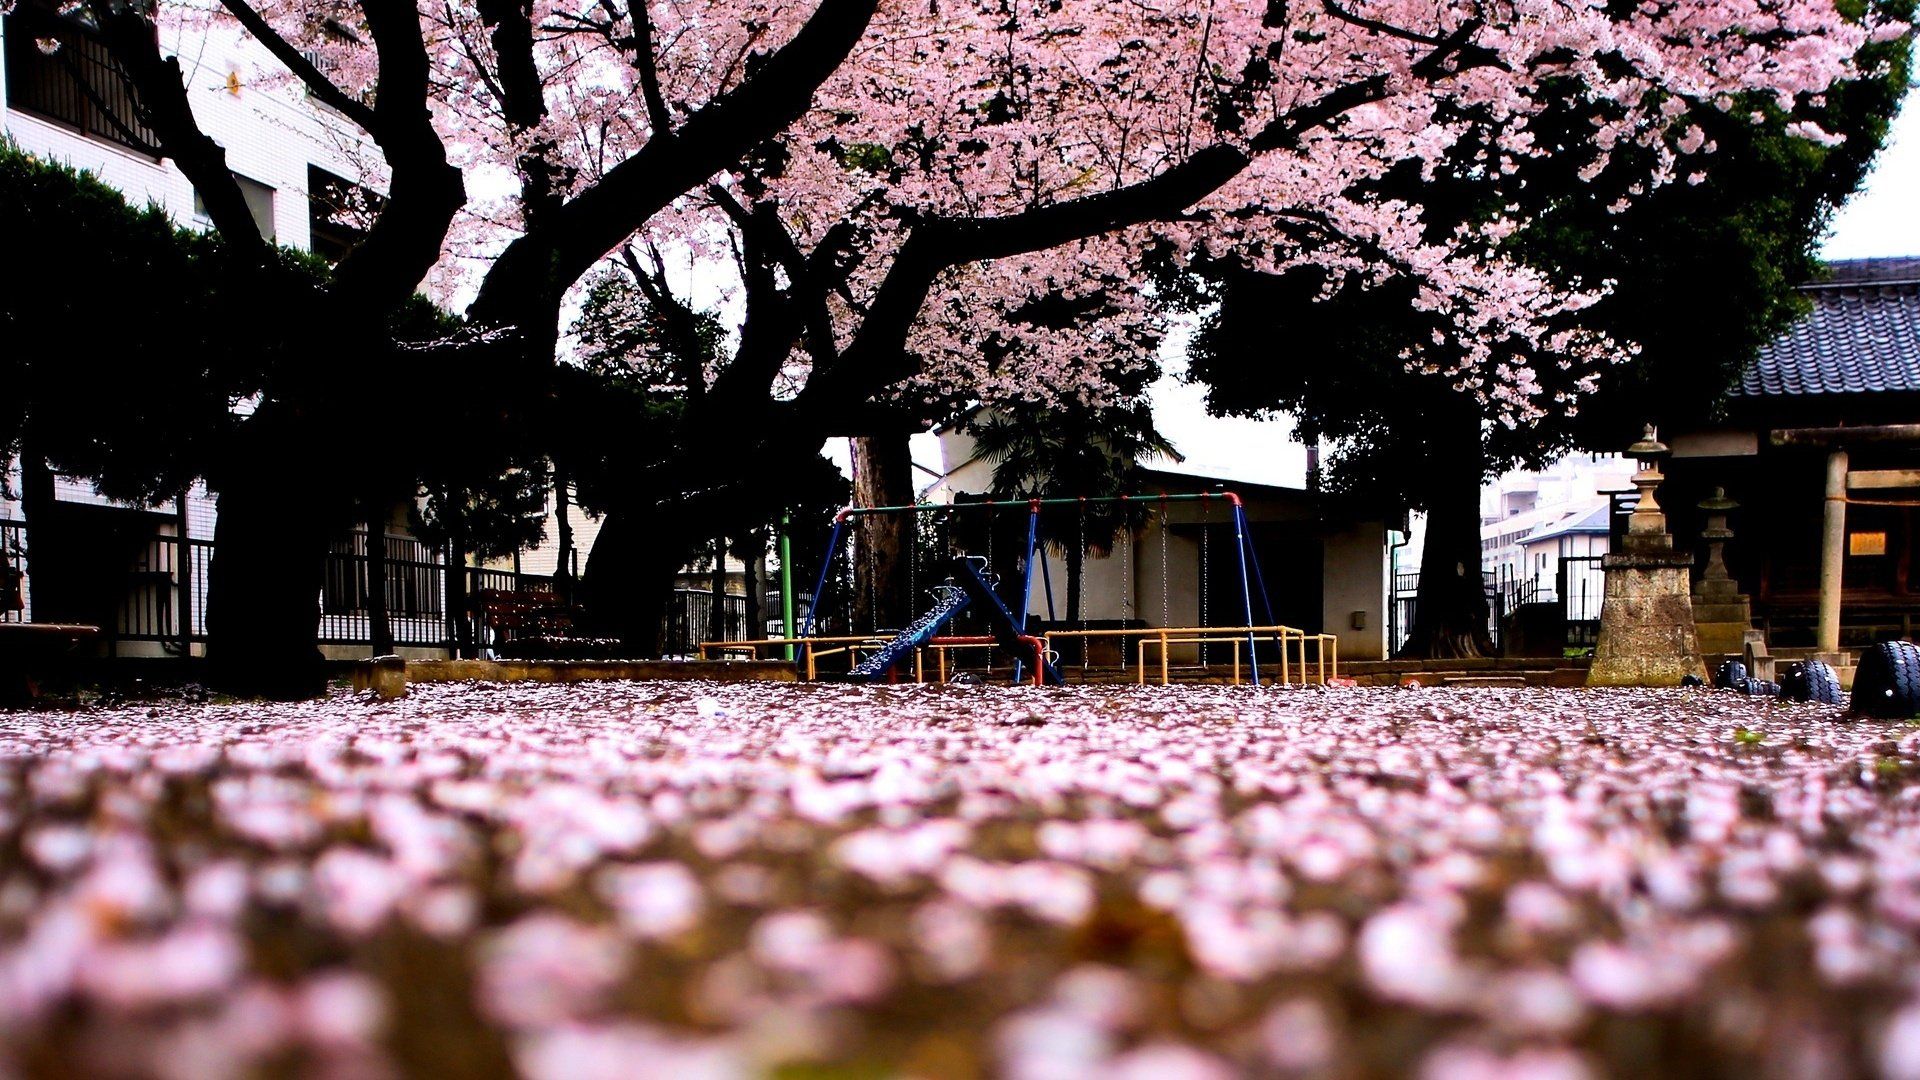 Download Sakura Tree Wallpaper For Mac #vt8o2 masbradwall.com